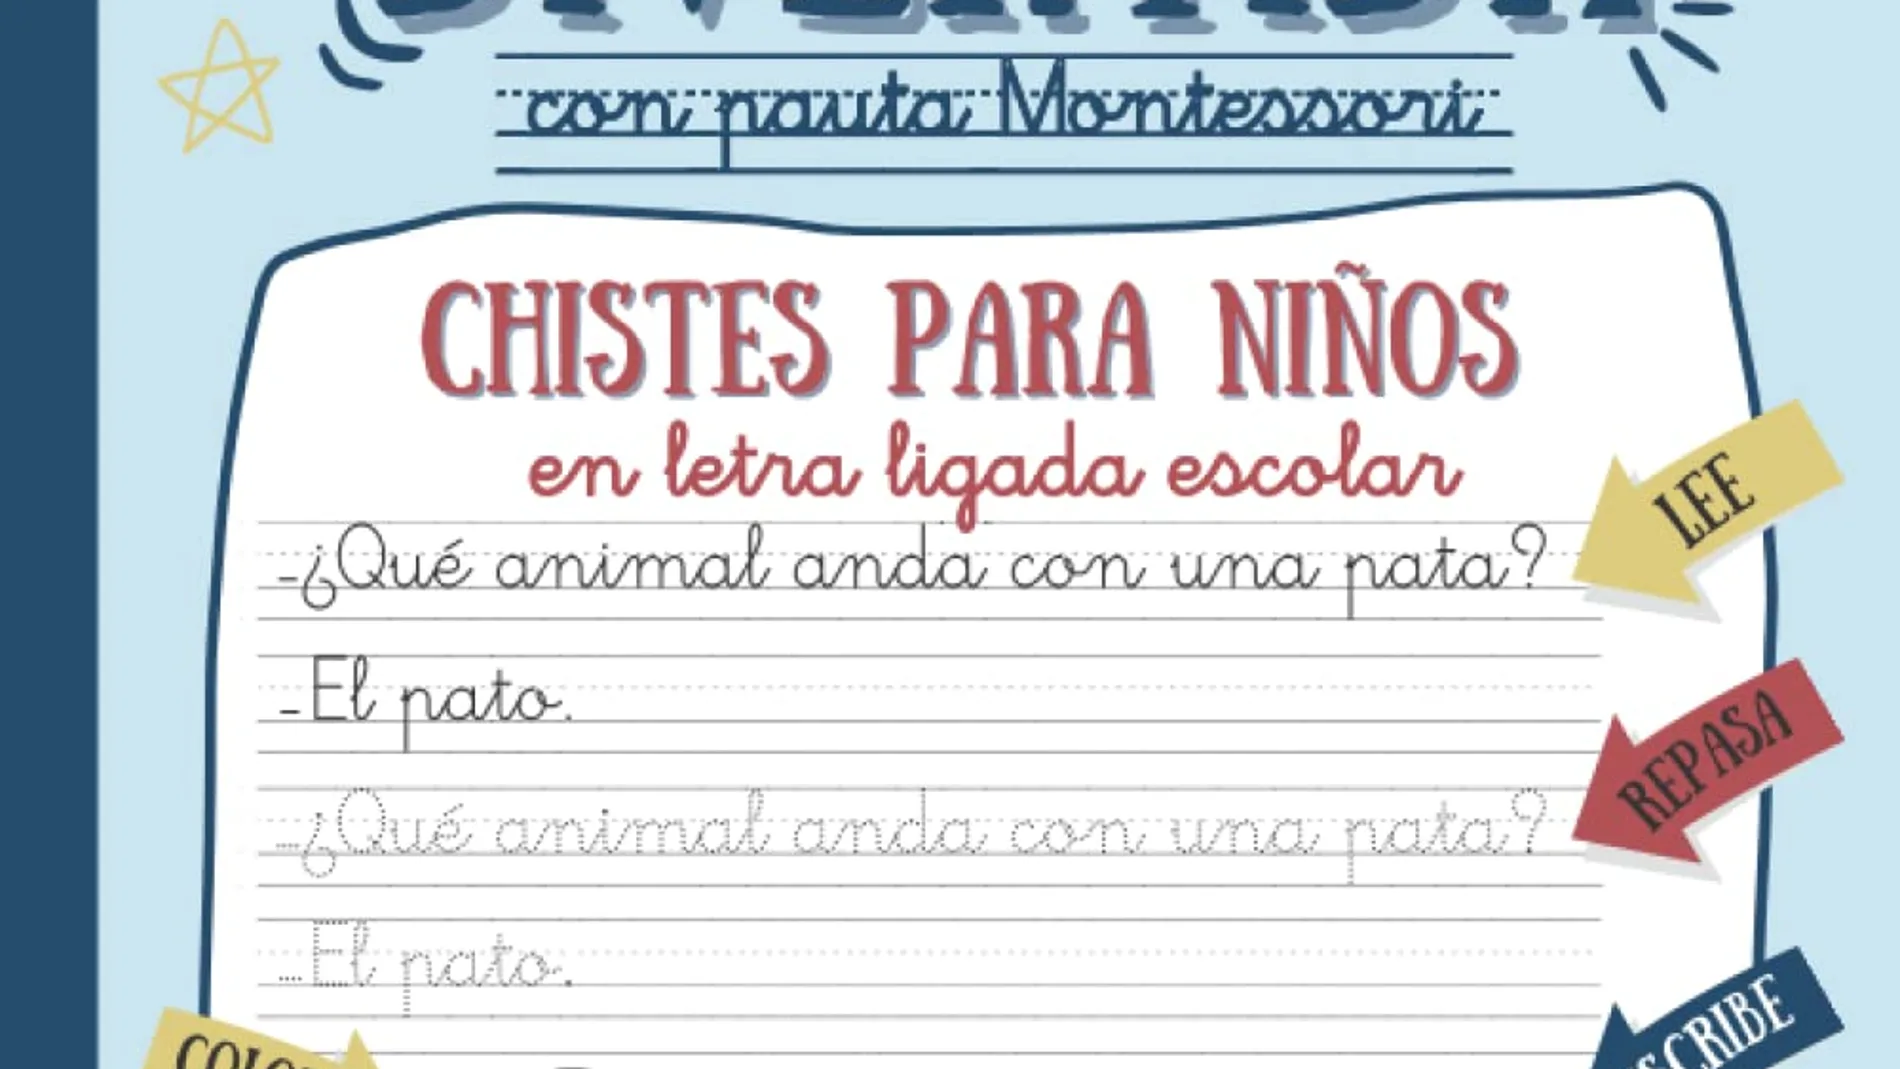 El mejor libro de caligrafía para el verano es este cuaderno de Montessori,  según los clientes de